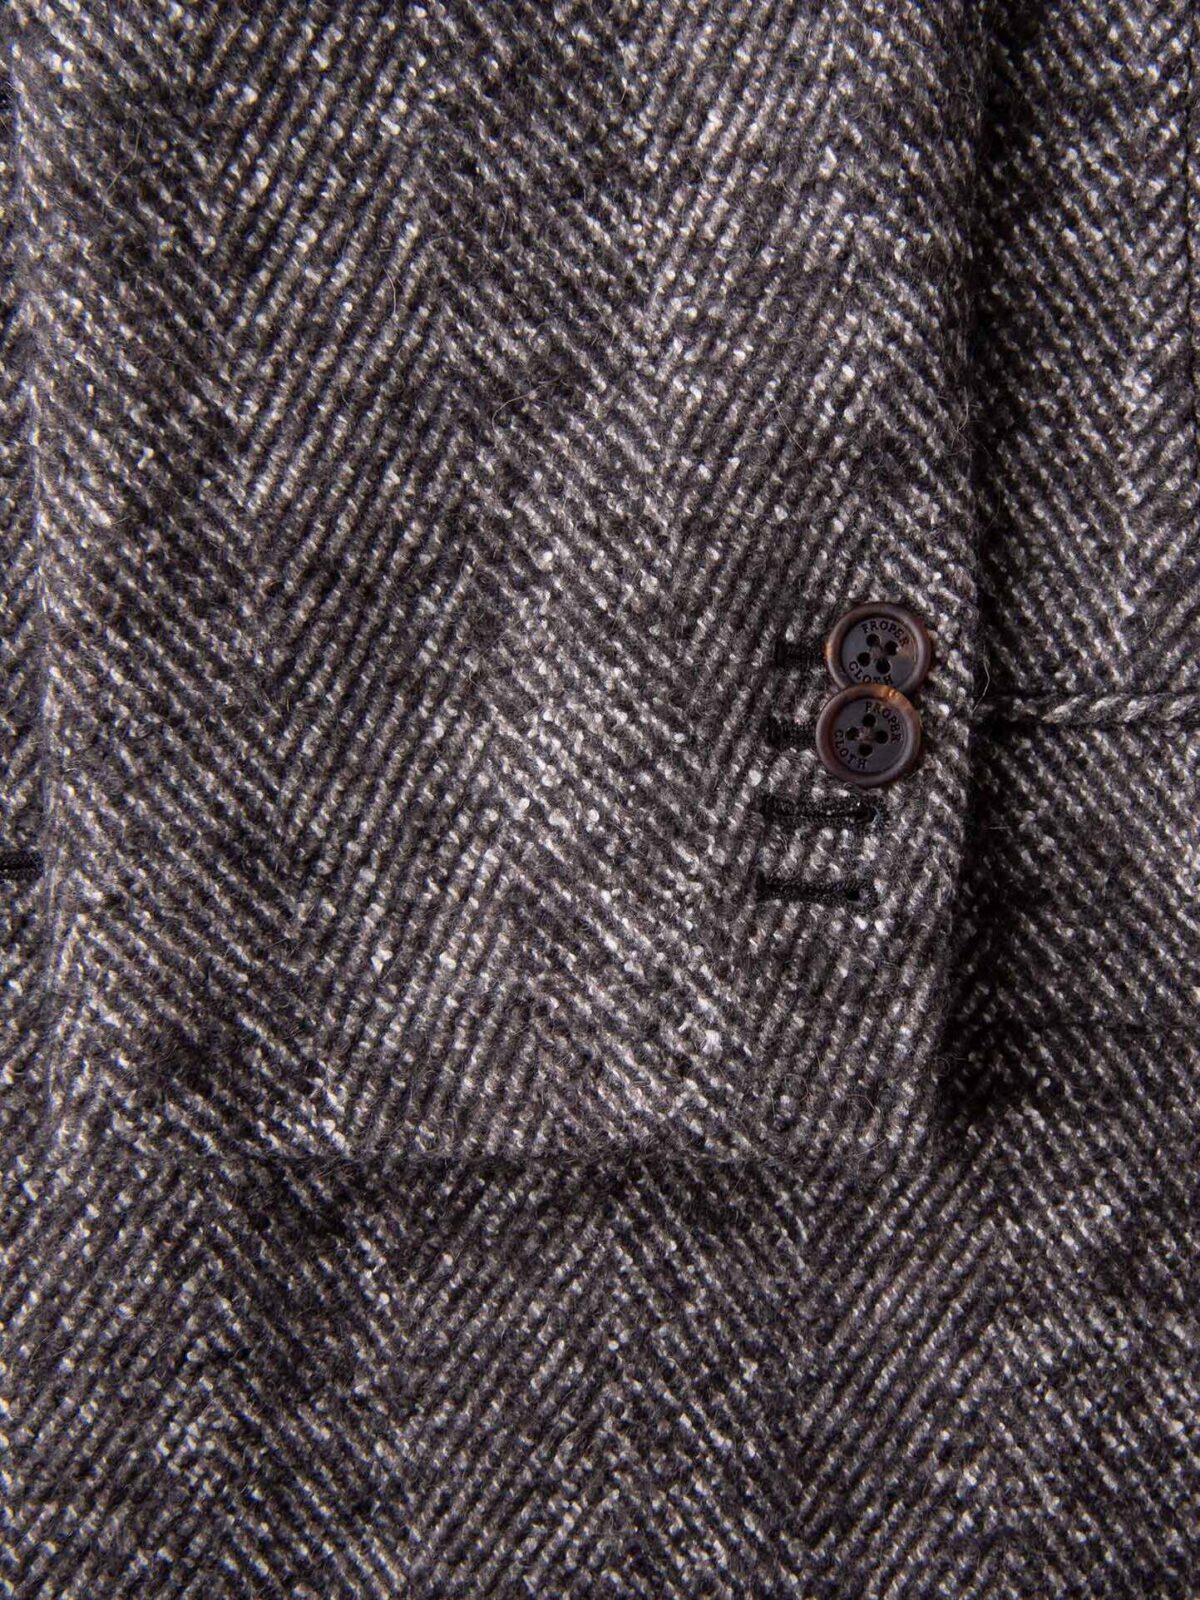 Tweed wool cloth Stack 2418 Herringbones